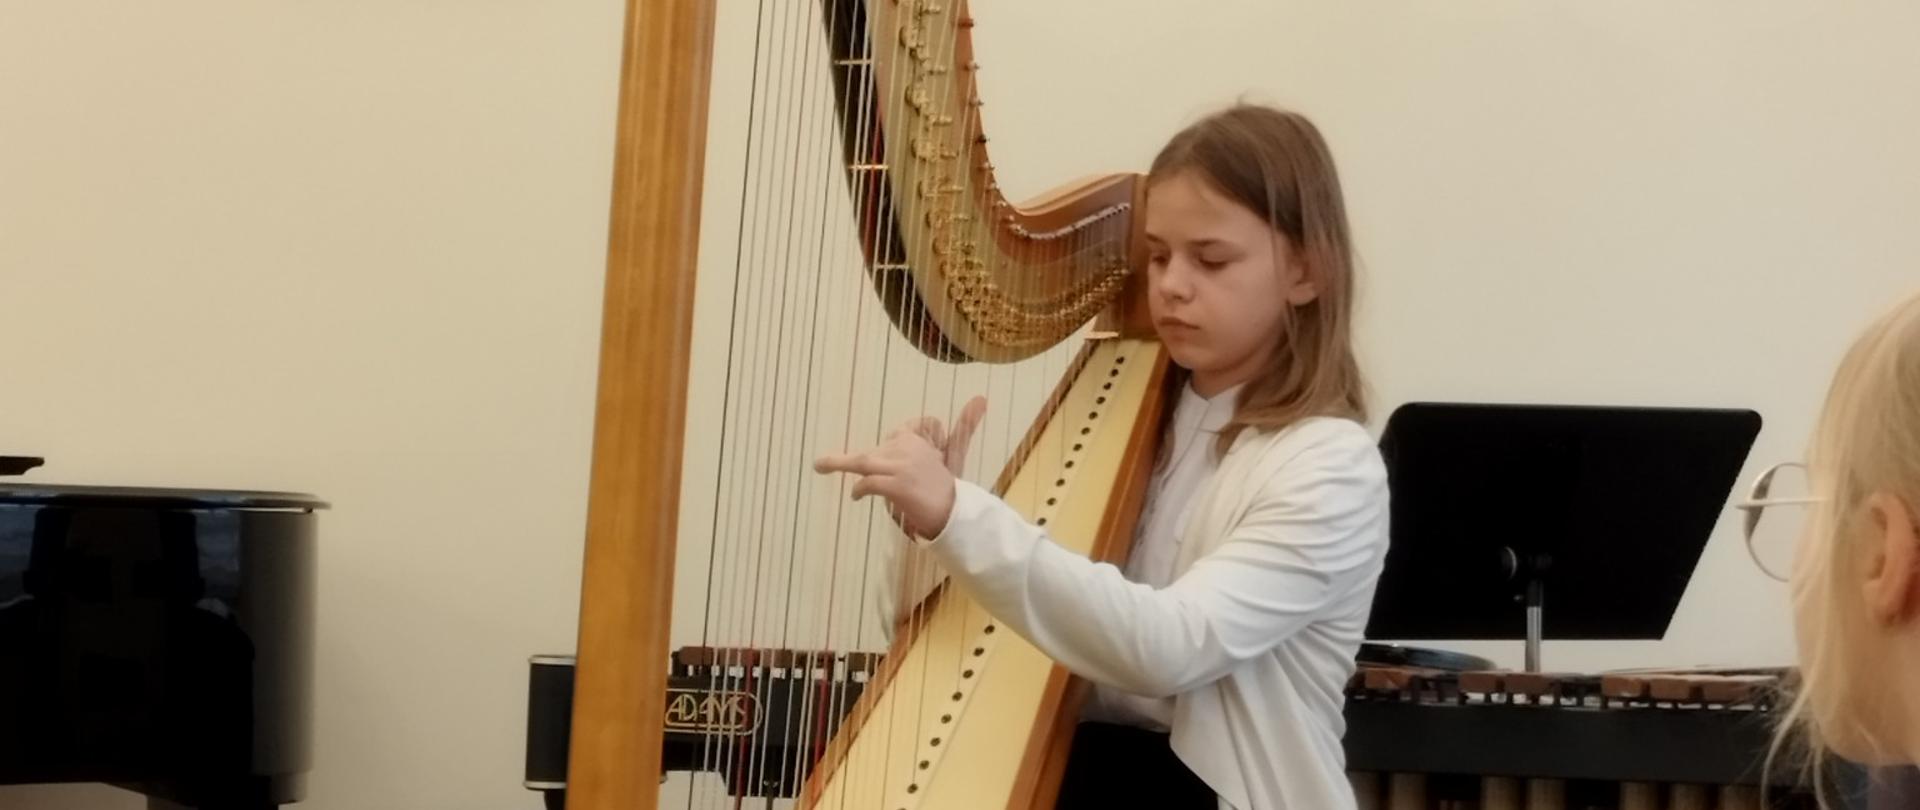 Karolina Cholewa uczennica klasy czwartej cyklu sześcioletniego wykonuje utwór na harfie.